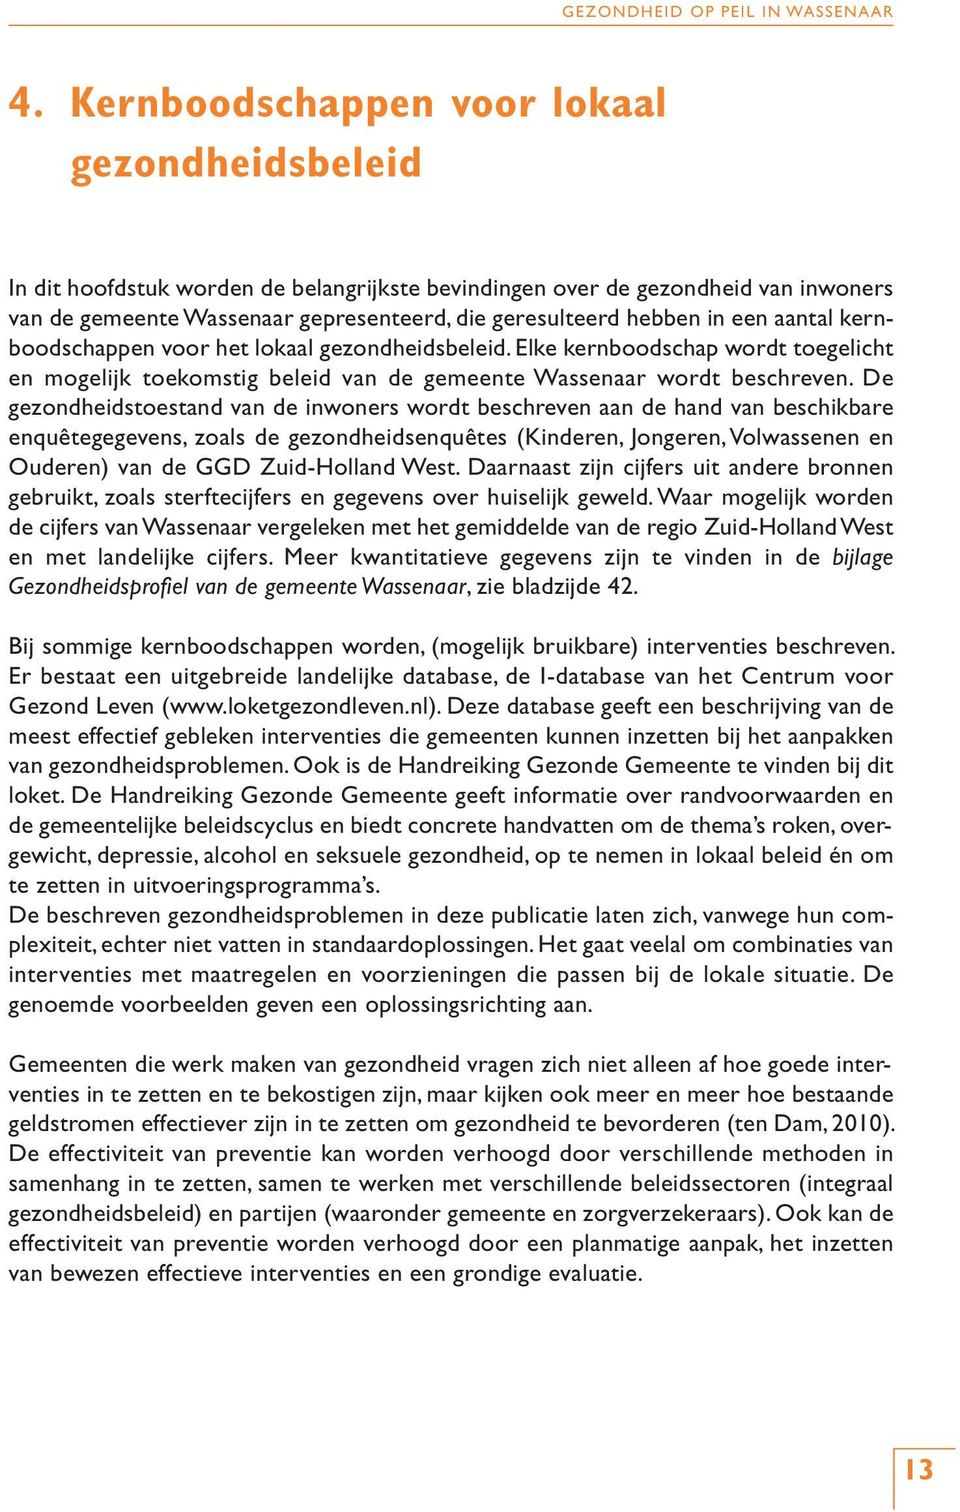 De gezondheidstoestand van de inwoners wordt beschreven aan de hand van beschikbare enquêtegegevens, zoals de gezondheidsenquêtes (Kinderen, Jongeren, Volwassenen en Ouderen) van de GGD Zuid-Holland